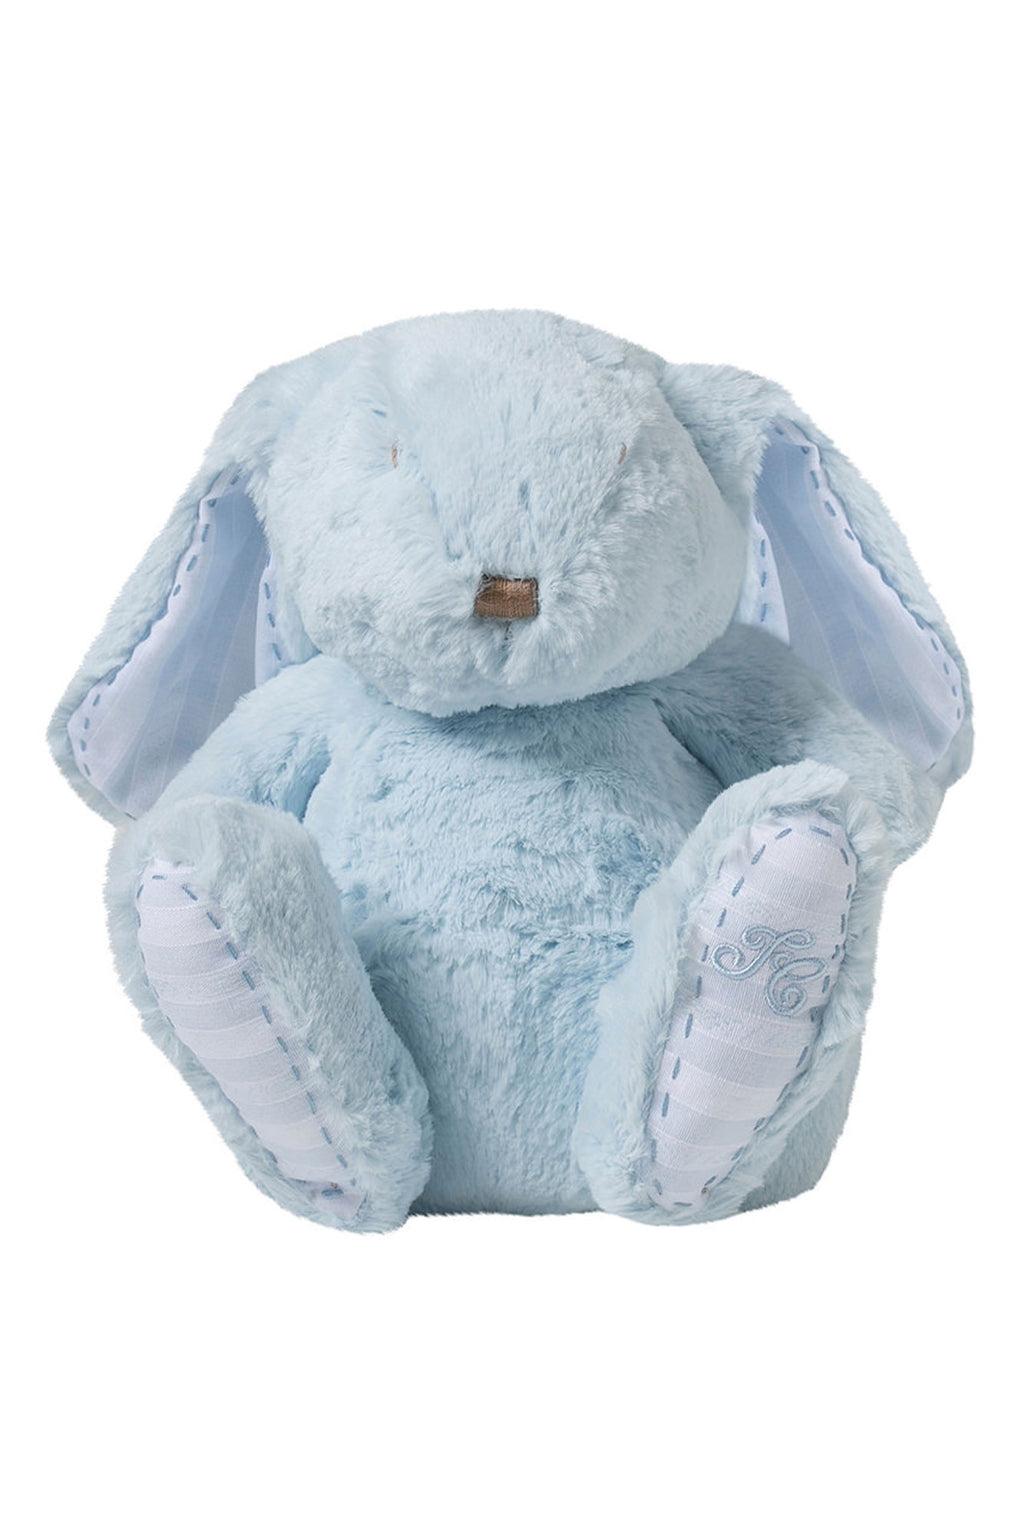 Augustin het konijn - 25 cm Licht blauw